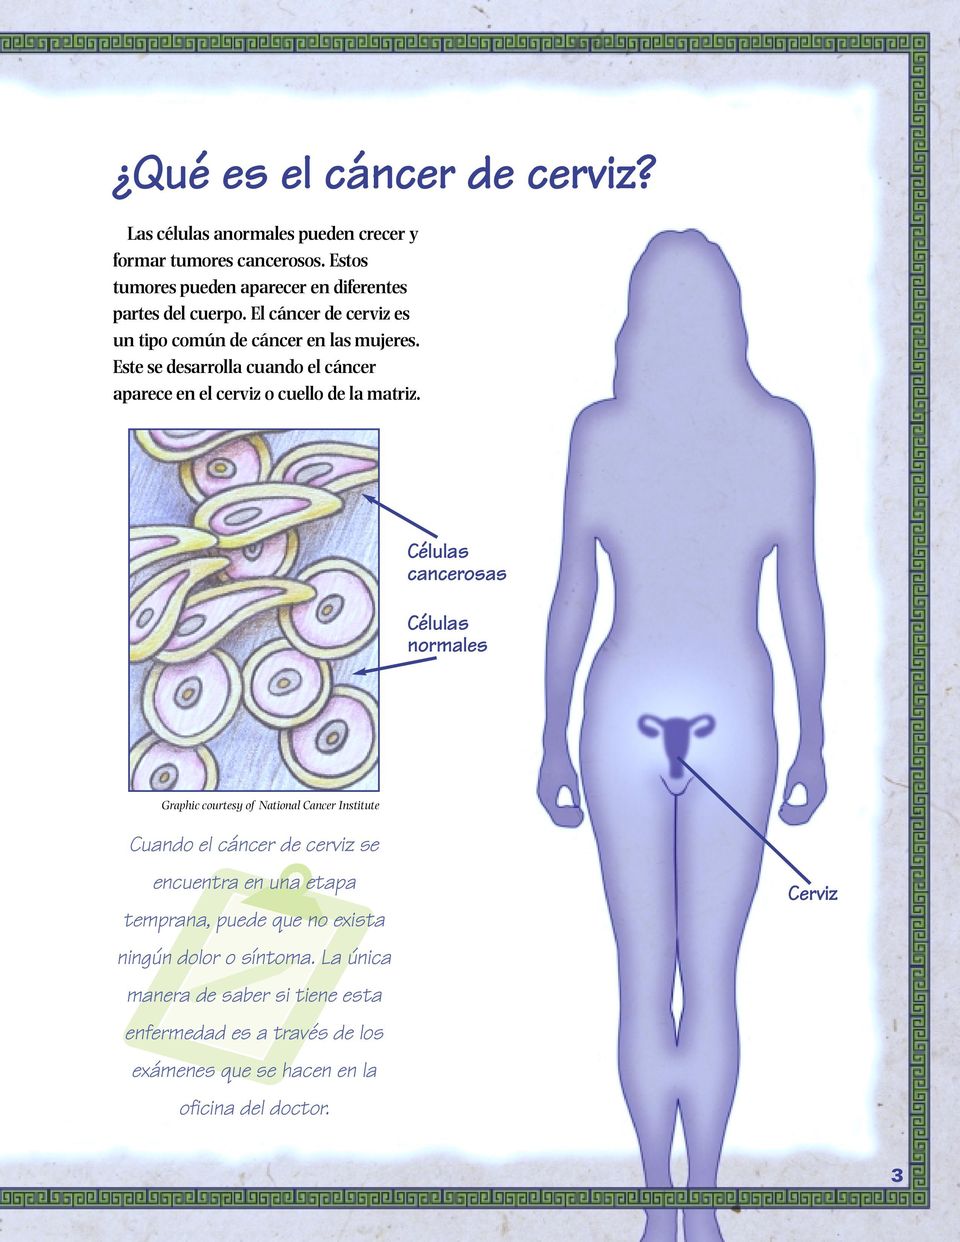 Este se desarrolla cuando el cáncer aparece en el cerviz o cuello de la matriz.